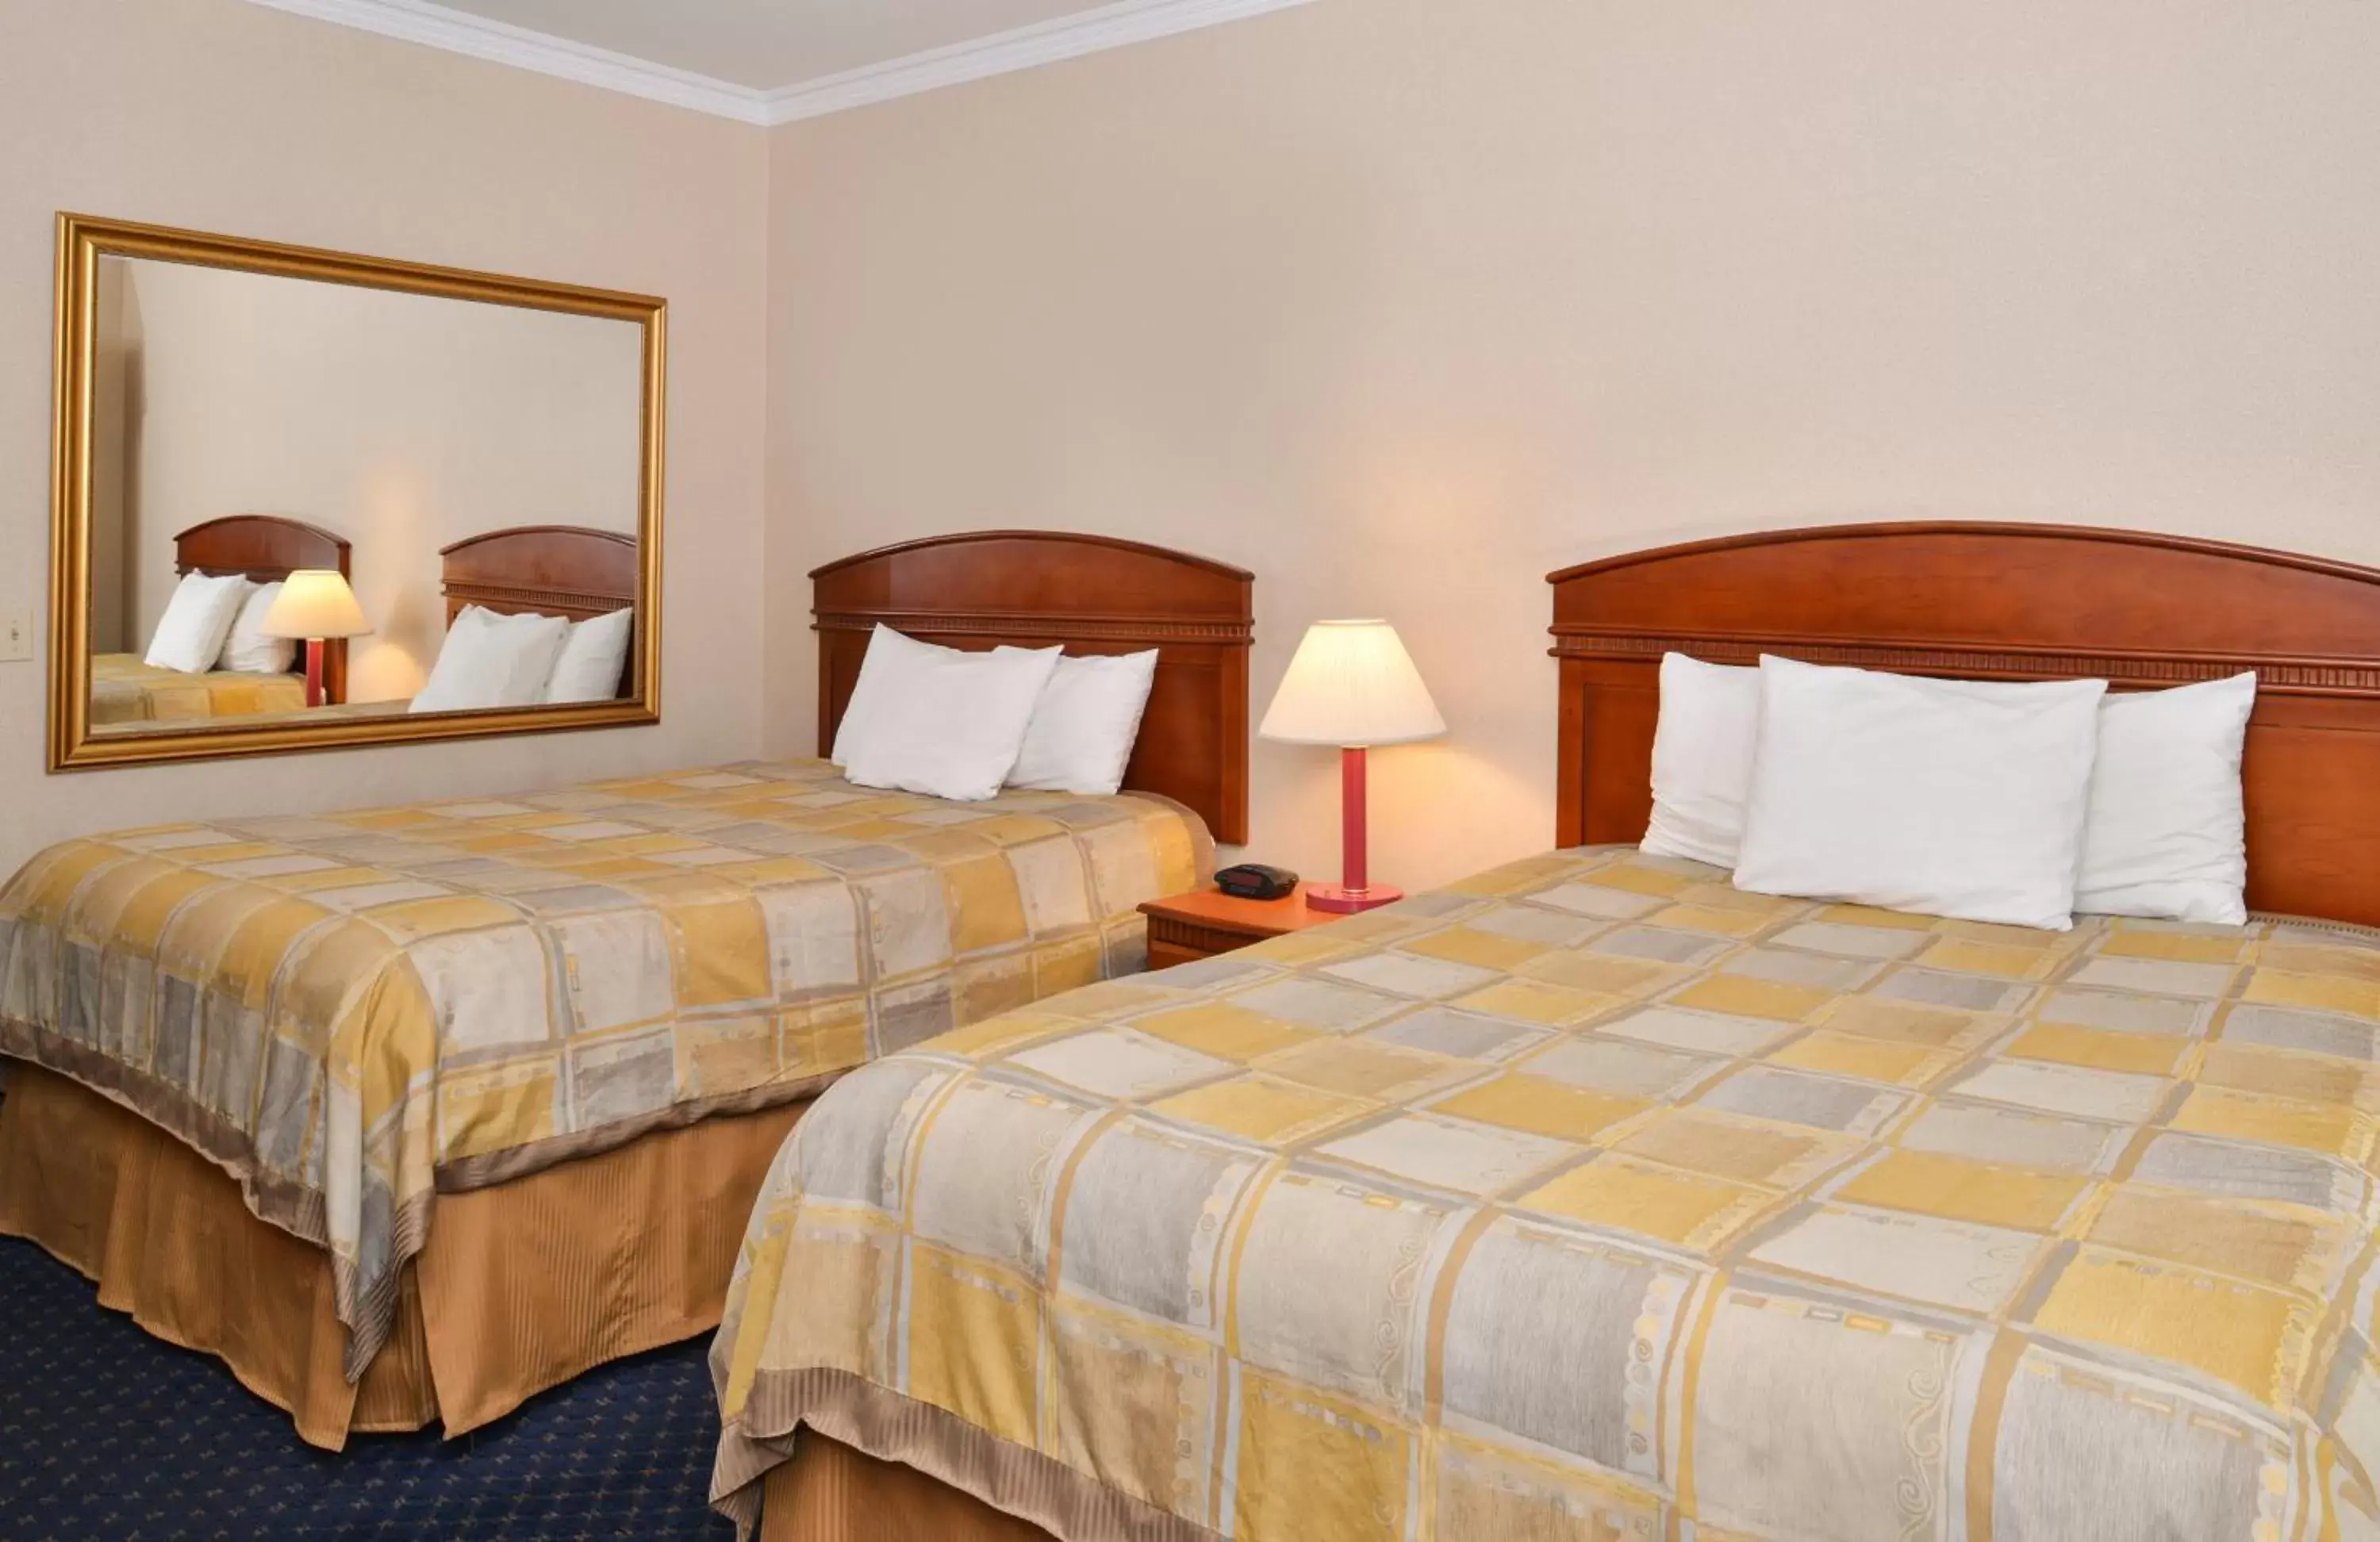 Bedroom, Bed in Americas Best Value Inn - Joshua Tree/Twentynine Palms